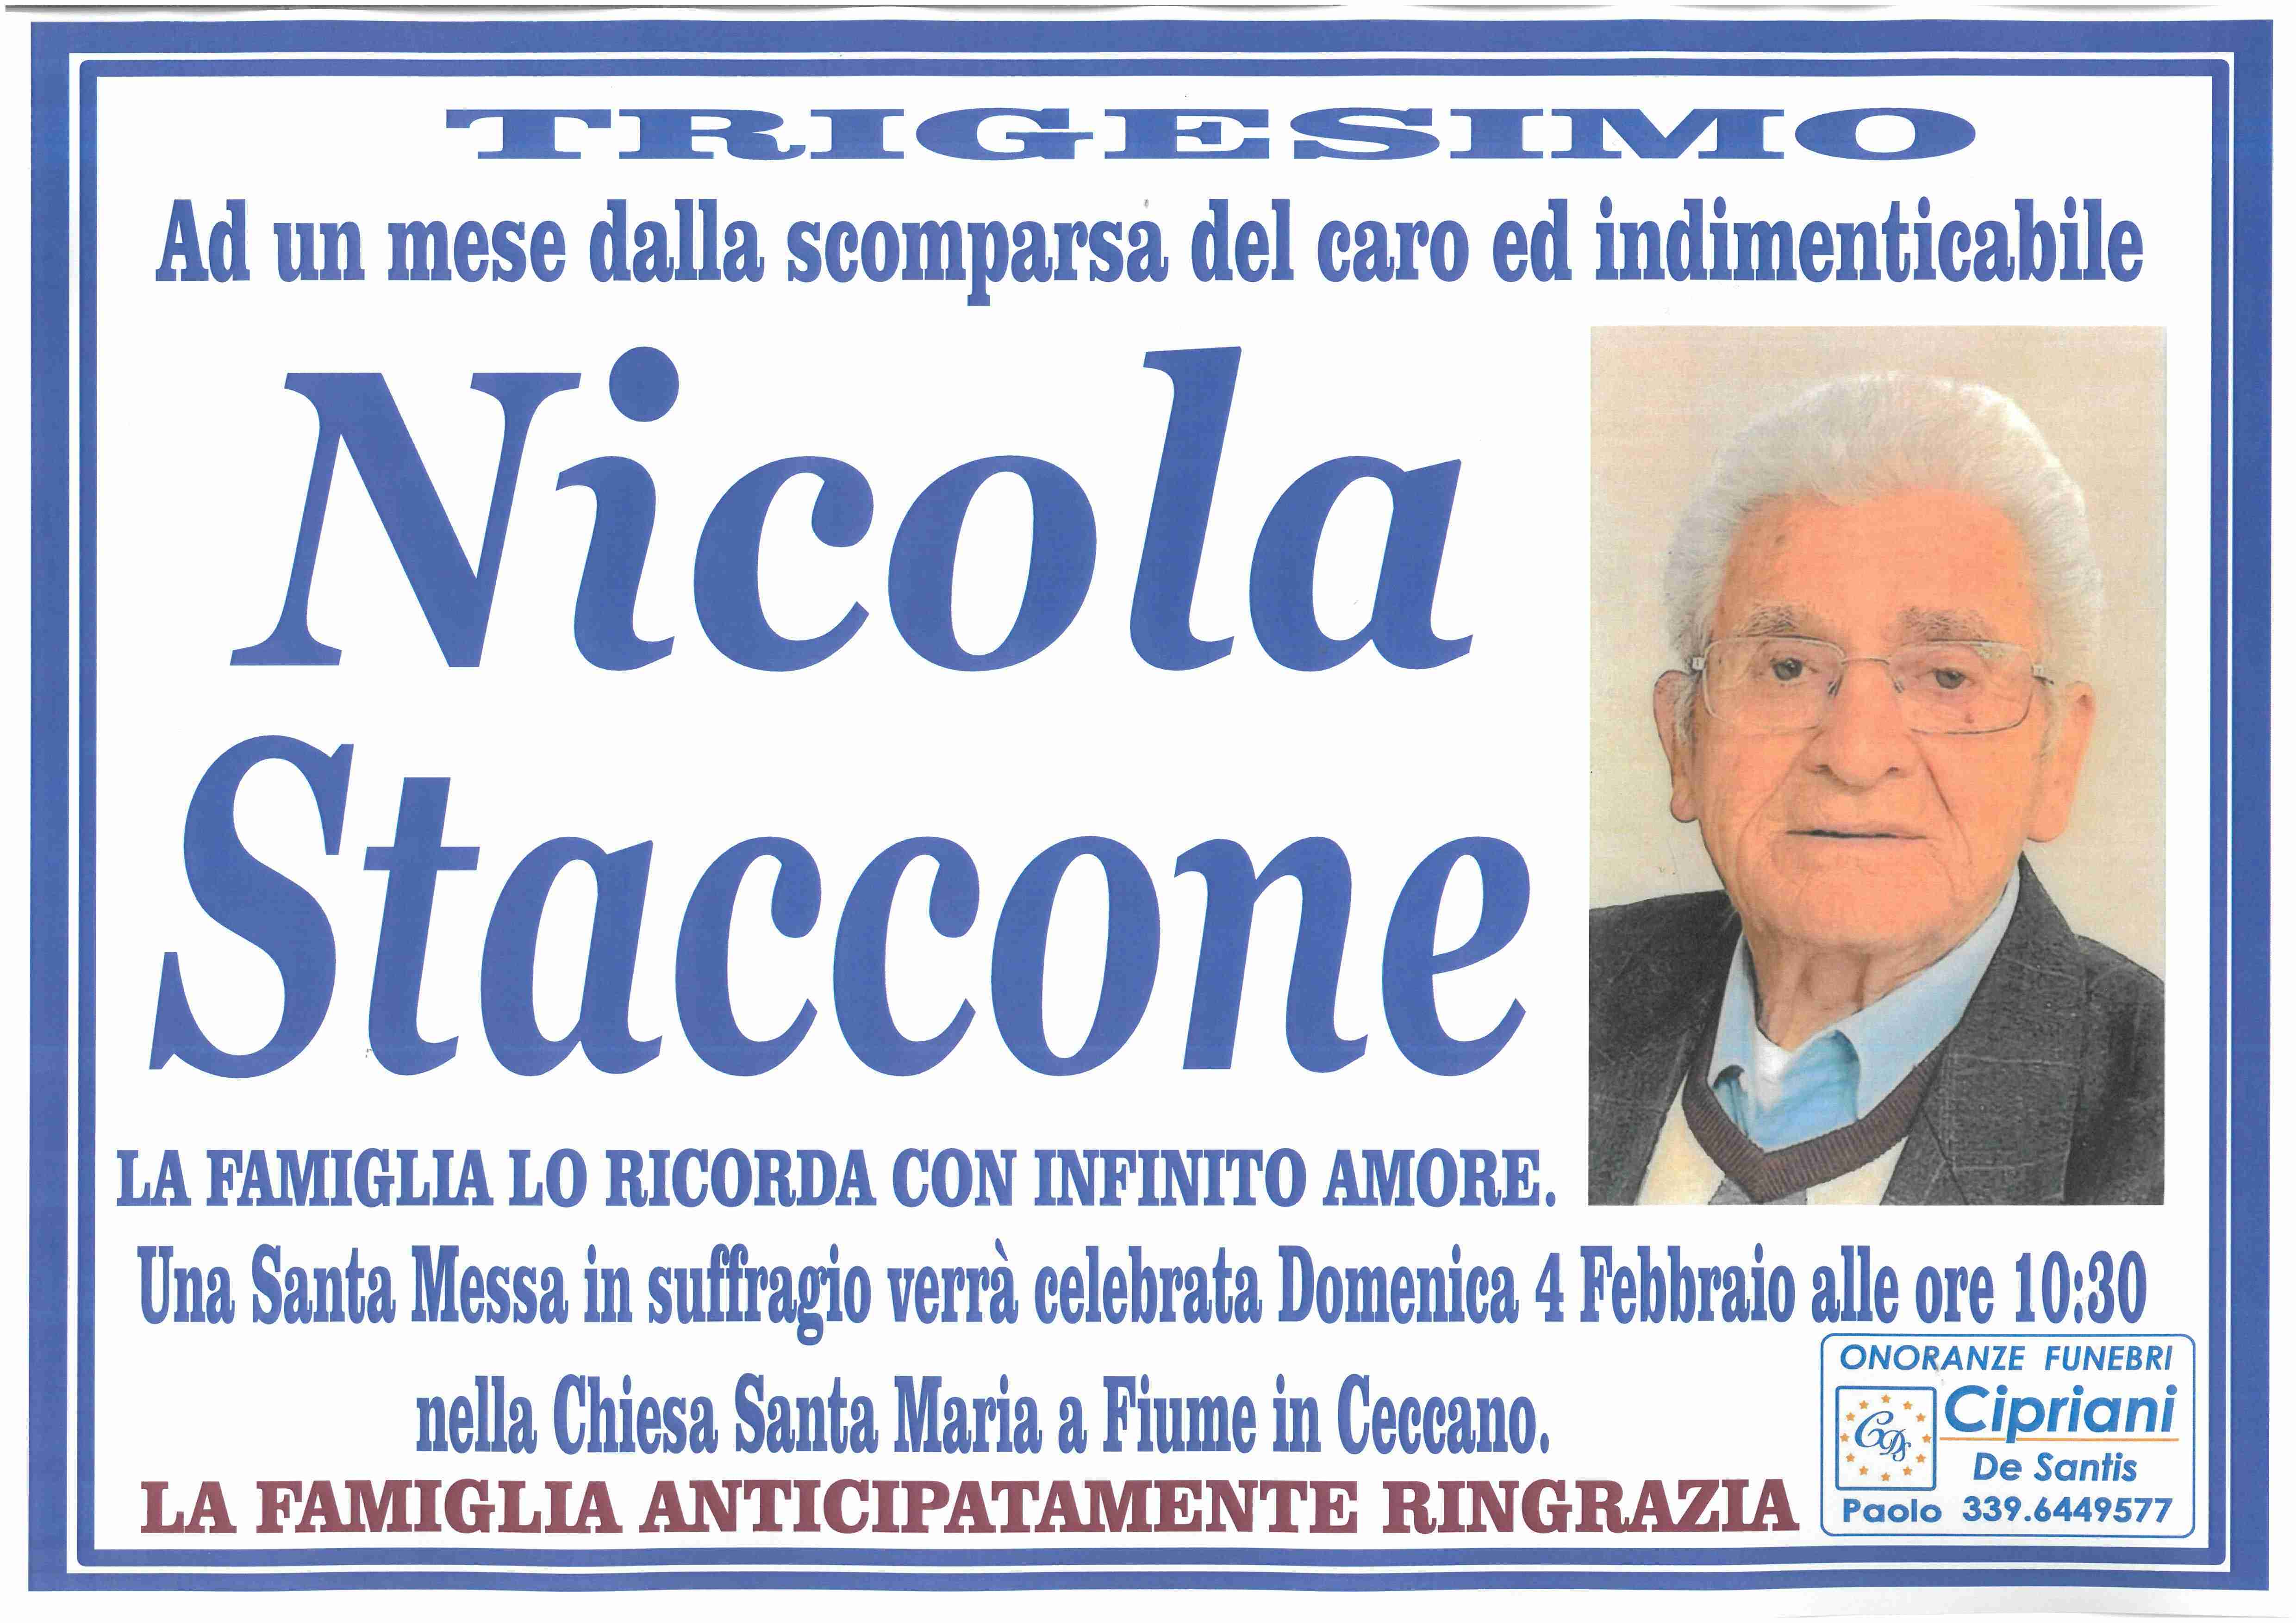 Nicola Staccone